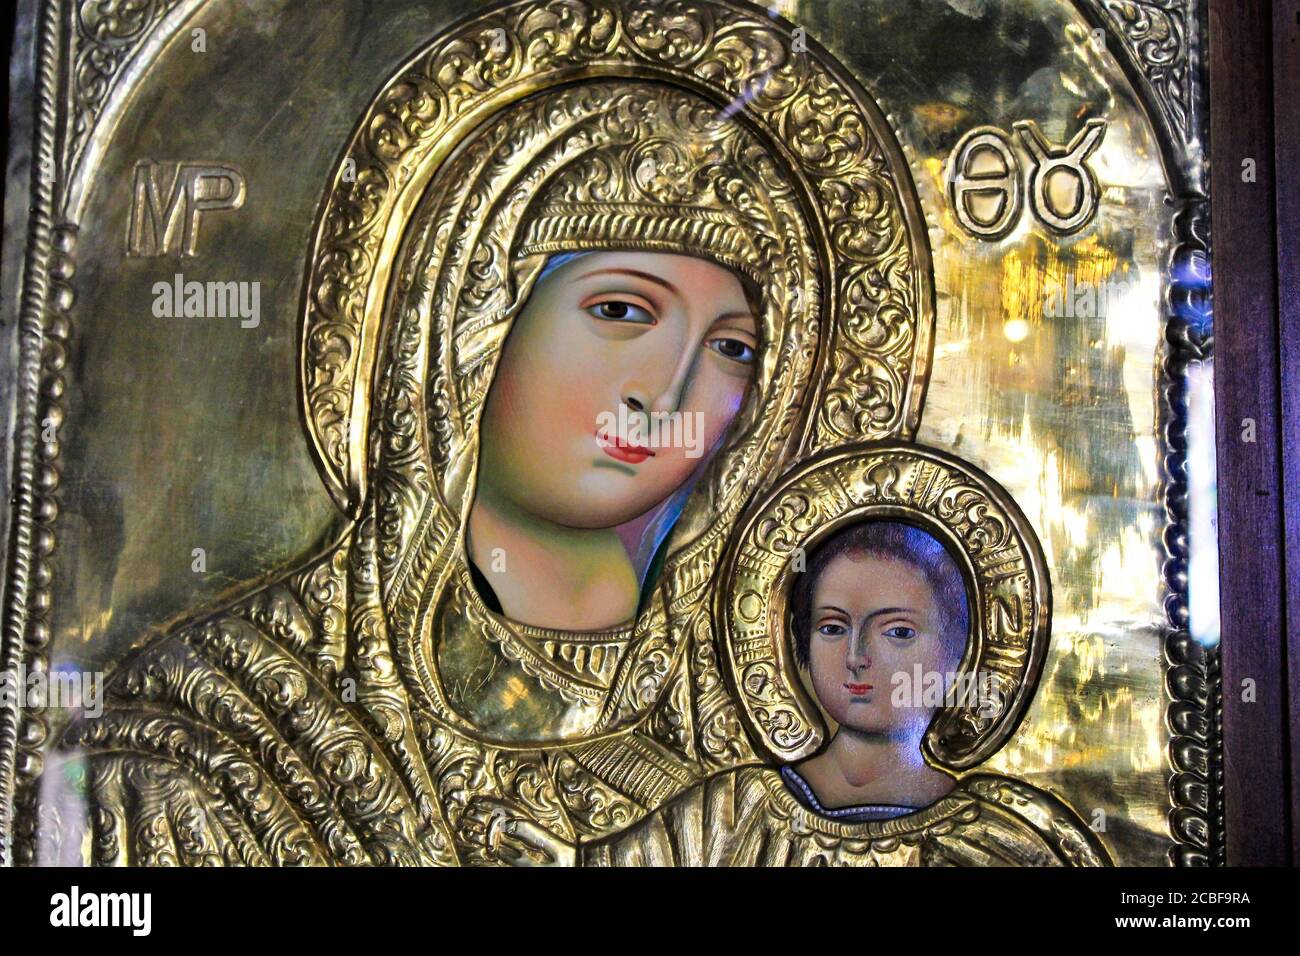 Grecia, Atene, 11 2020 agosto - icona della Vergine Maria con Gesù Cristo, artigianale e coperto d'oro, all'interno di una chiesa cristiana ortodossa. Foto Stock